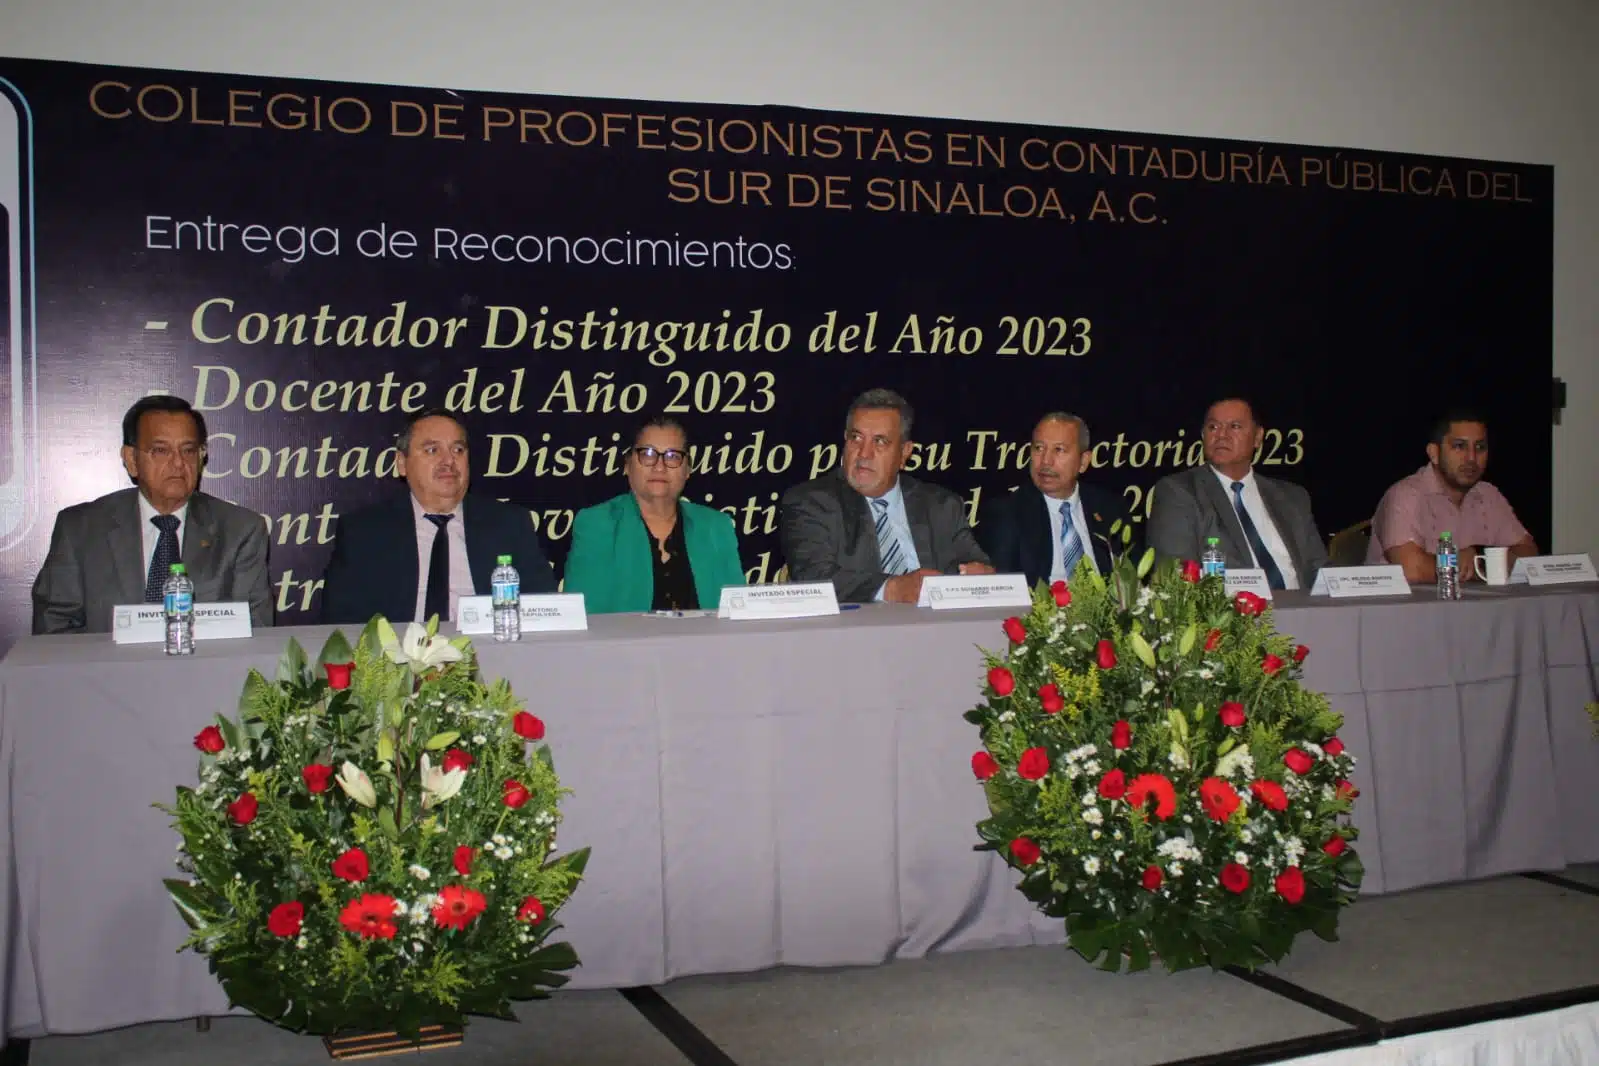 Colegio de Profesionistas en Contaduría Pública del Sur de Sinaloa